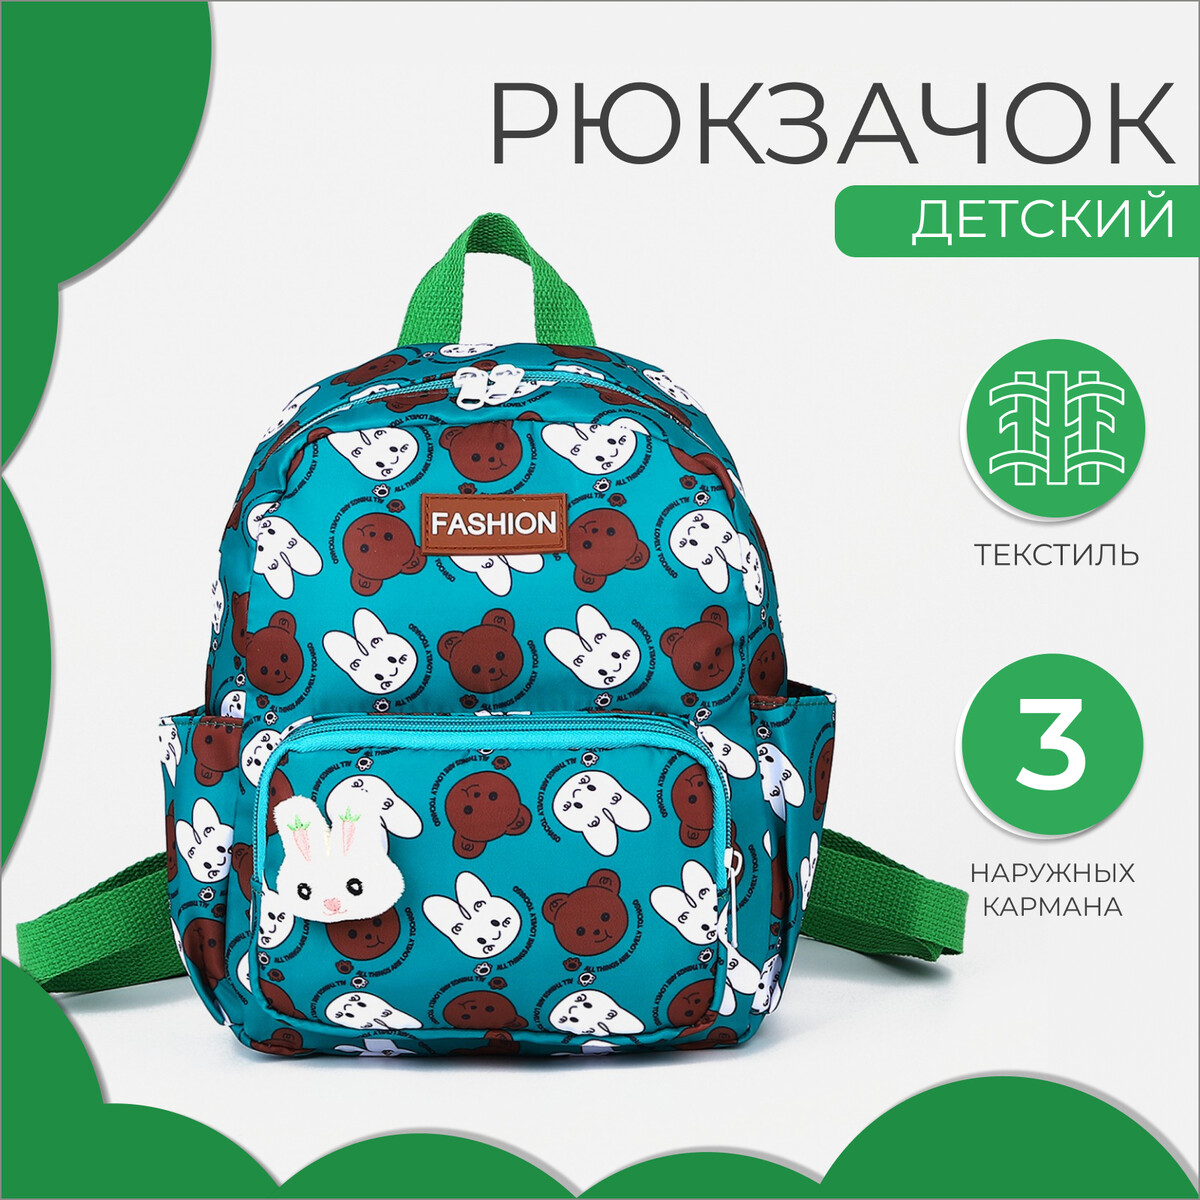 Рюкзак детский на молнии, 3 наружных кармана, цвет зеленый